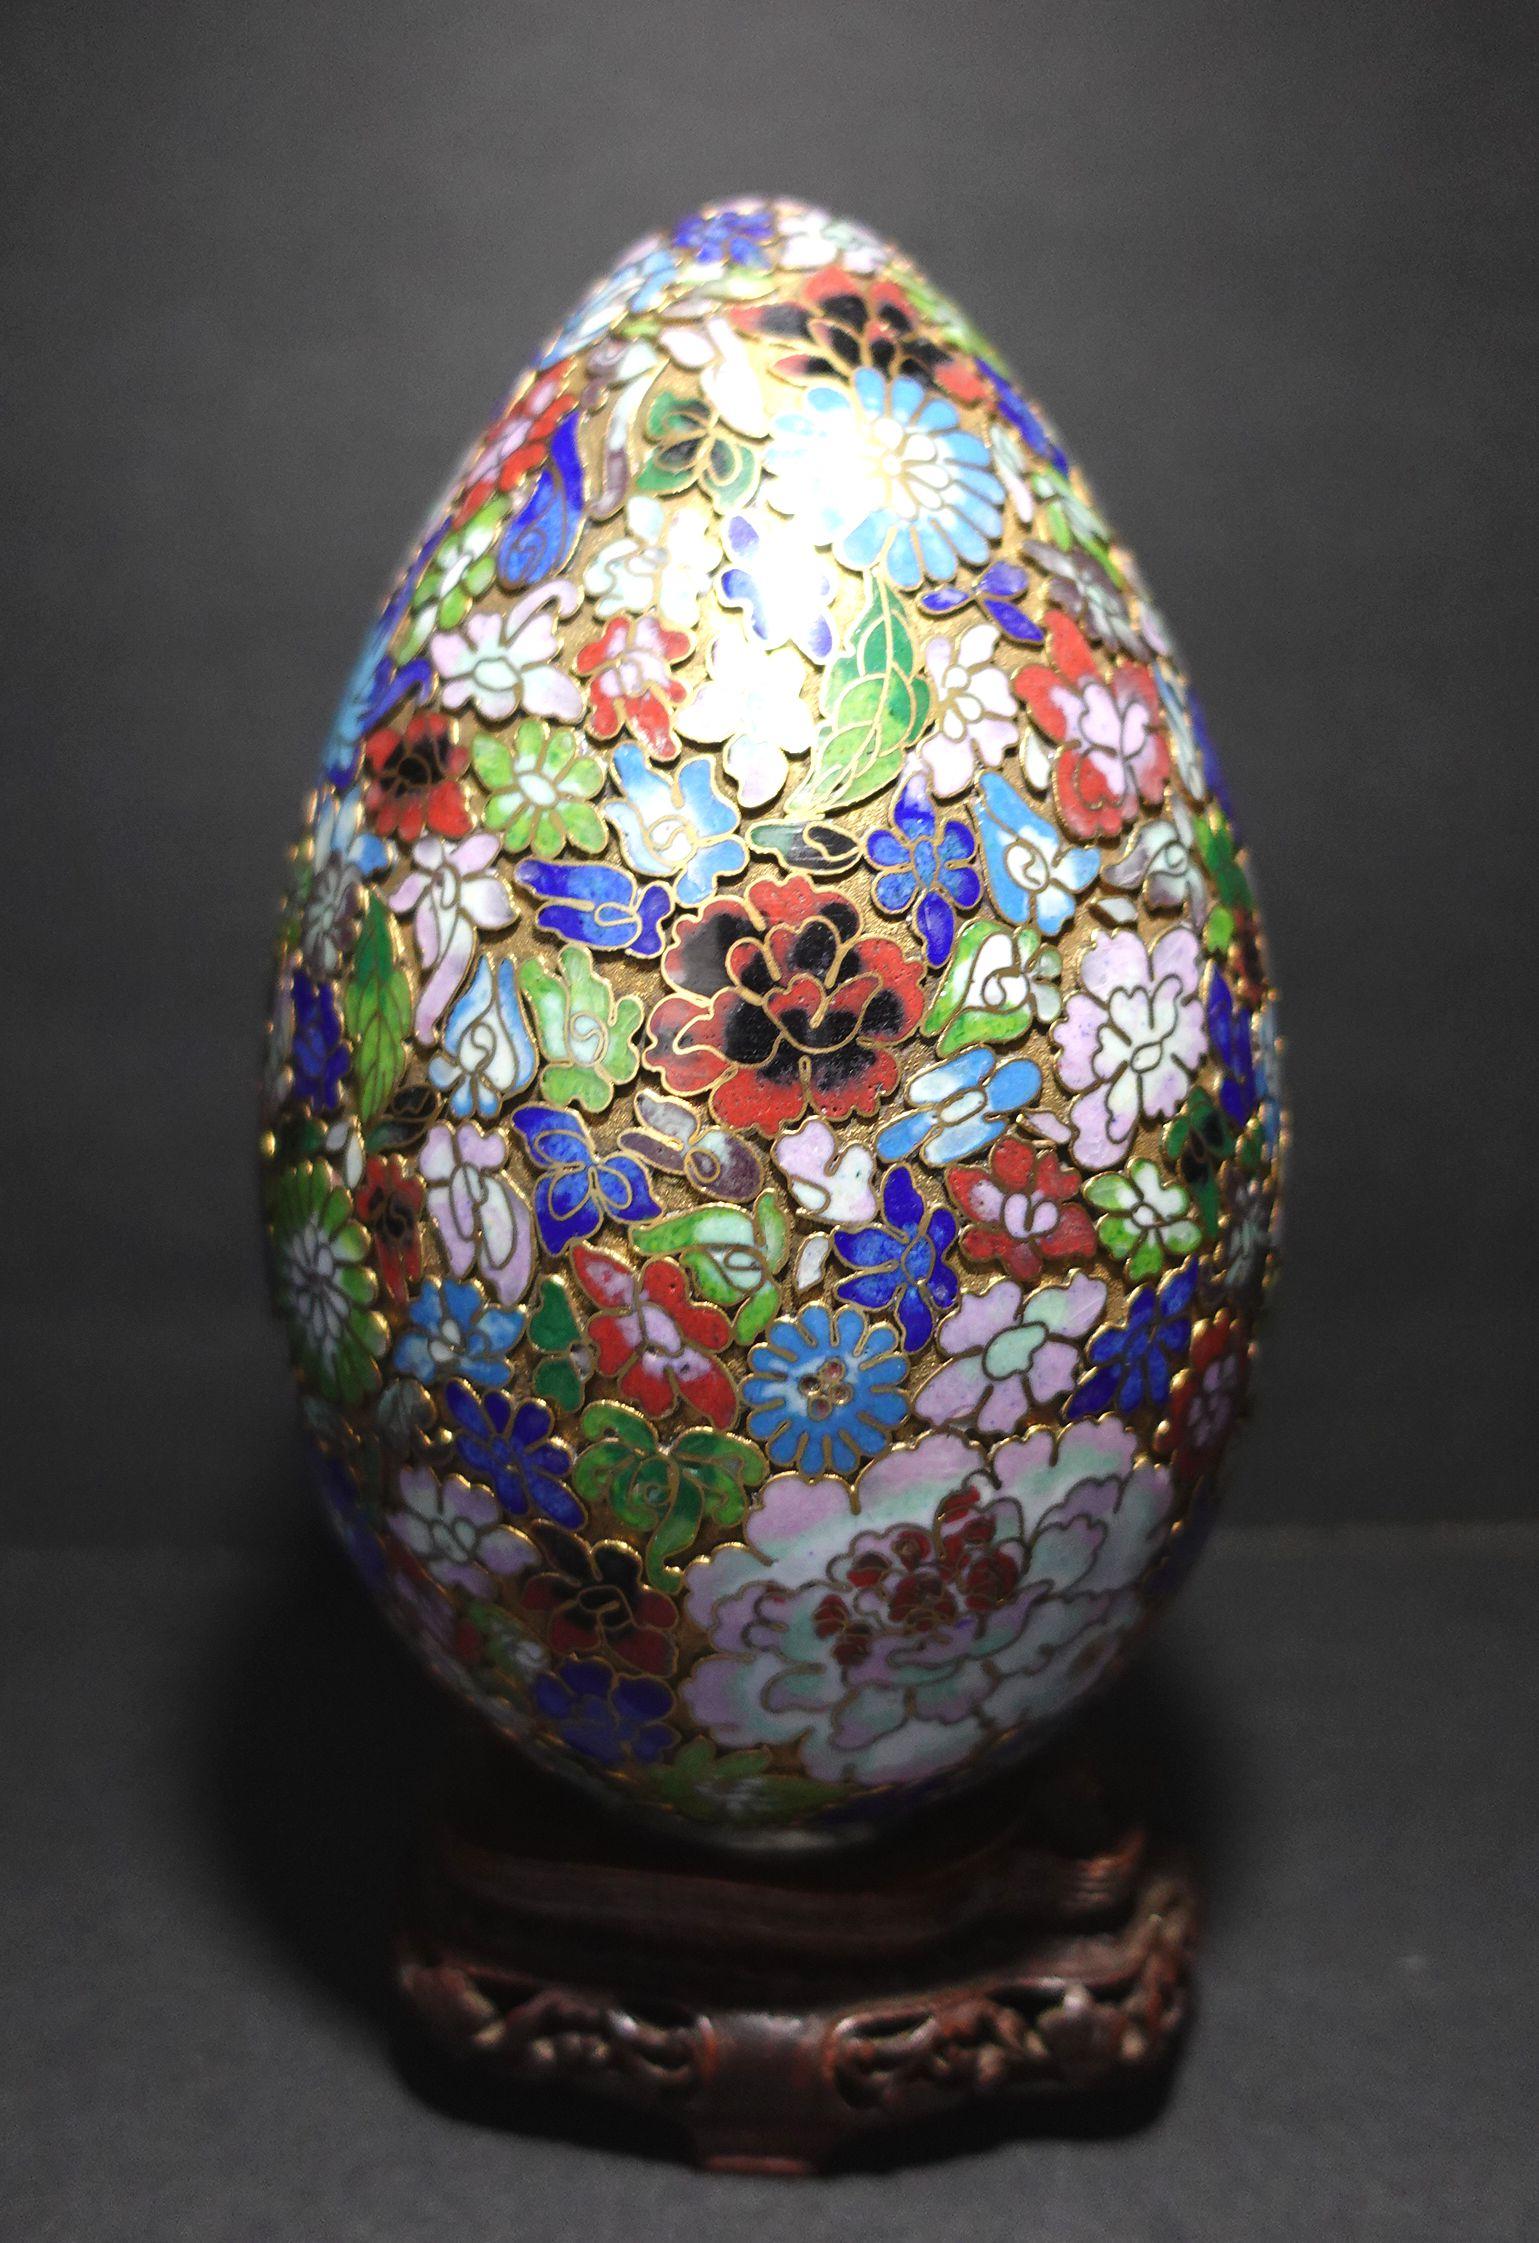 Voici un très grand et magnifique œuf en émail cloisonné chinois avec des motifs complexes réalisés à la main, posé sur un support en bois, début du 20e siècle. Il mesure environ 4 1/2